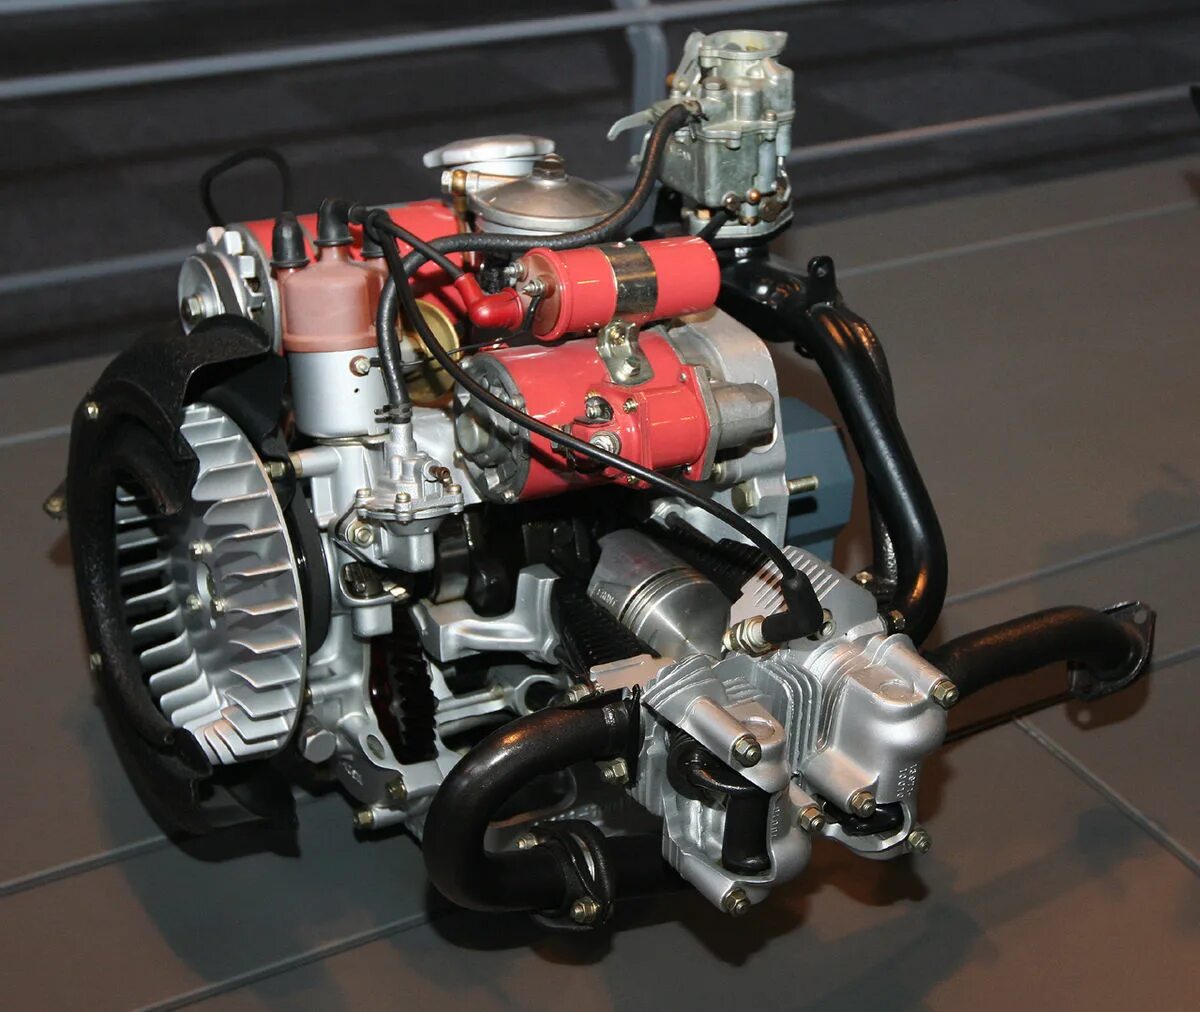 ДВС Тойота 4y. Дизельный оппозитный мотор Субару. Оппозитный 2 цилиндровый дизель. 4-Х цилиндровый оппозитный двигатель. Flat engine